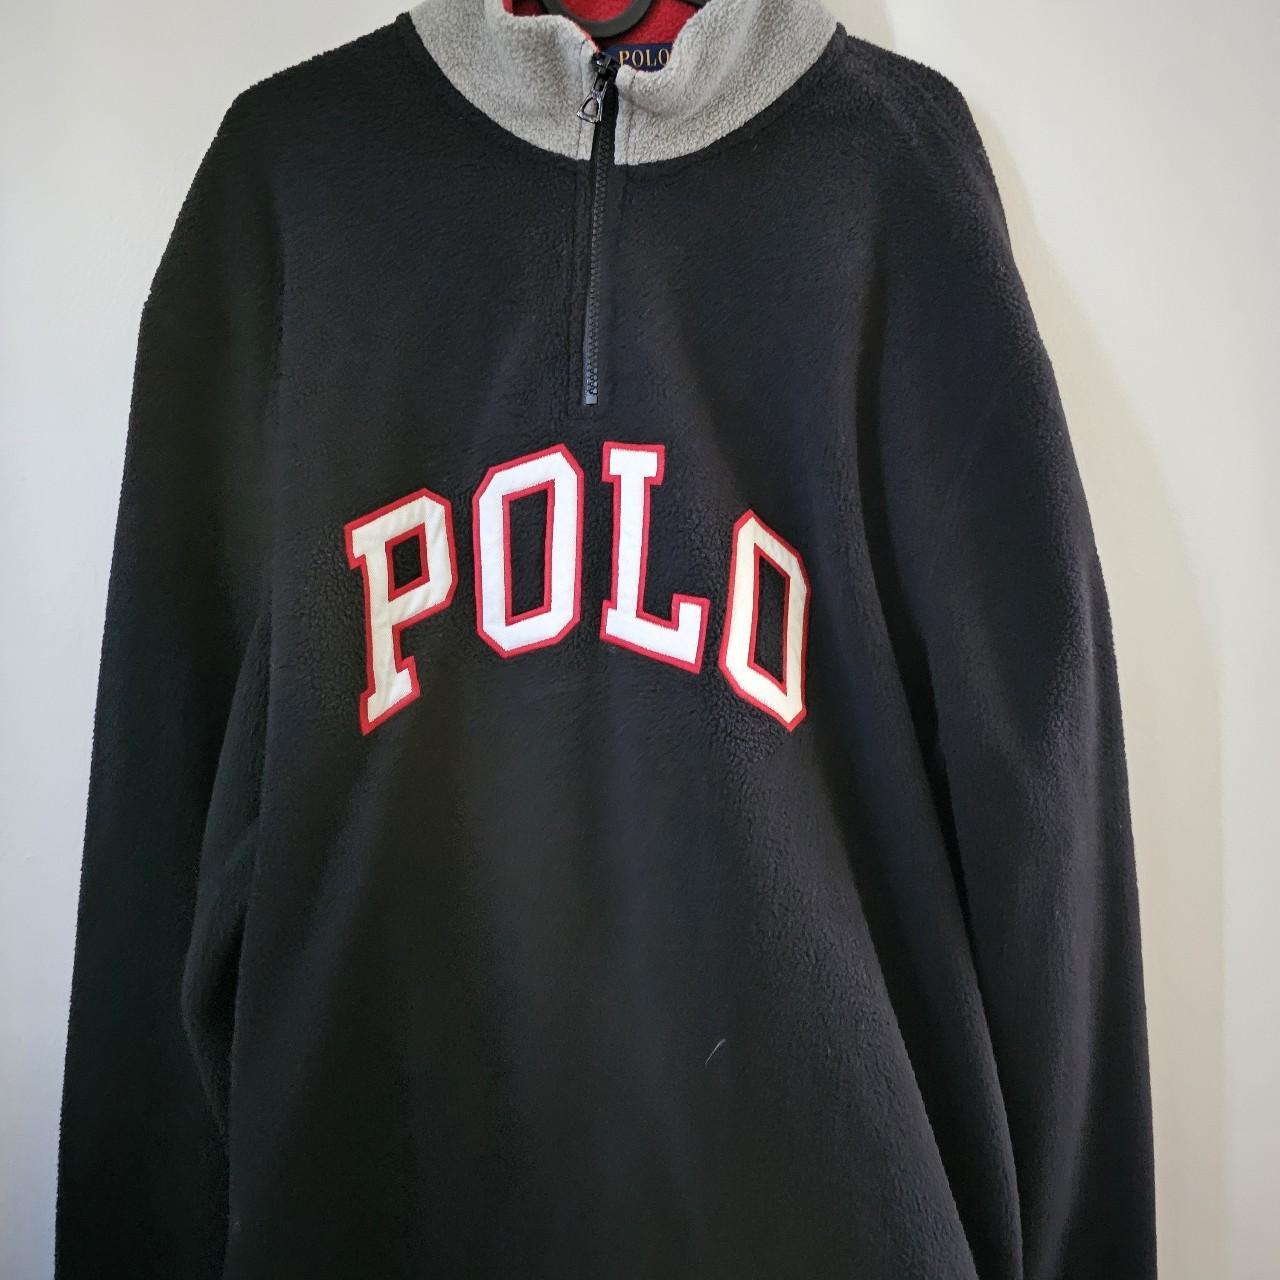 Black and Red Polo USA Fleece #fleece #winter... - Depop